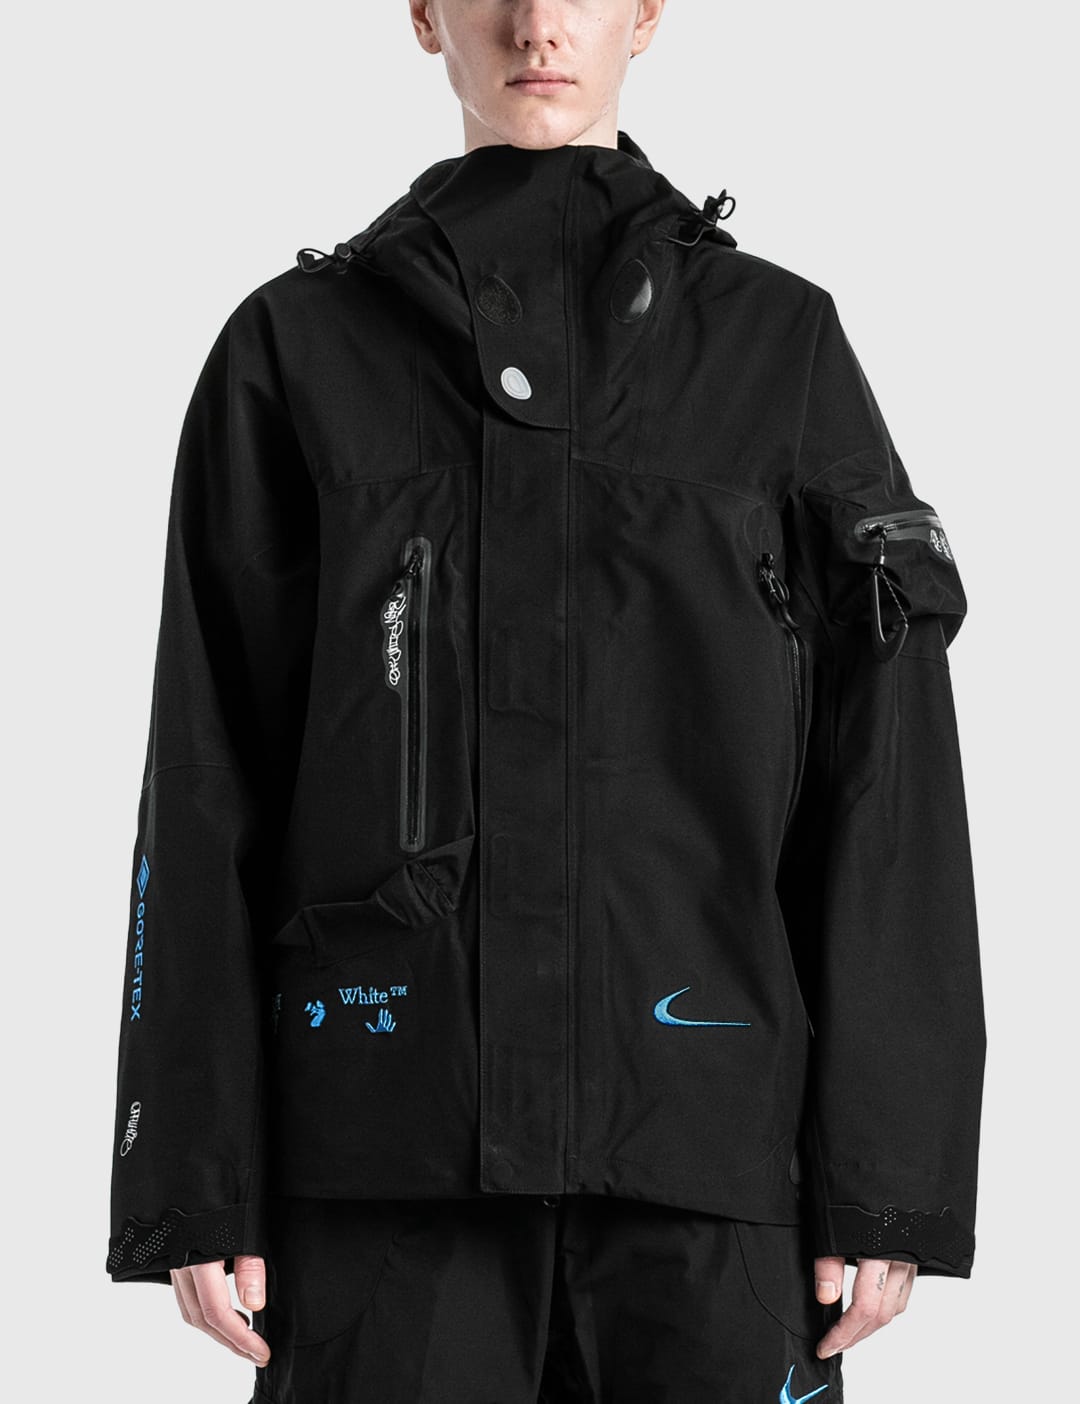 Nike x Off-White™ GORE-TEX Jacket